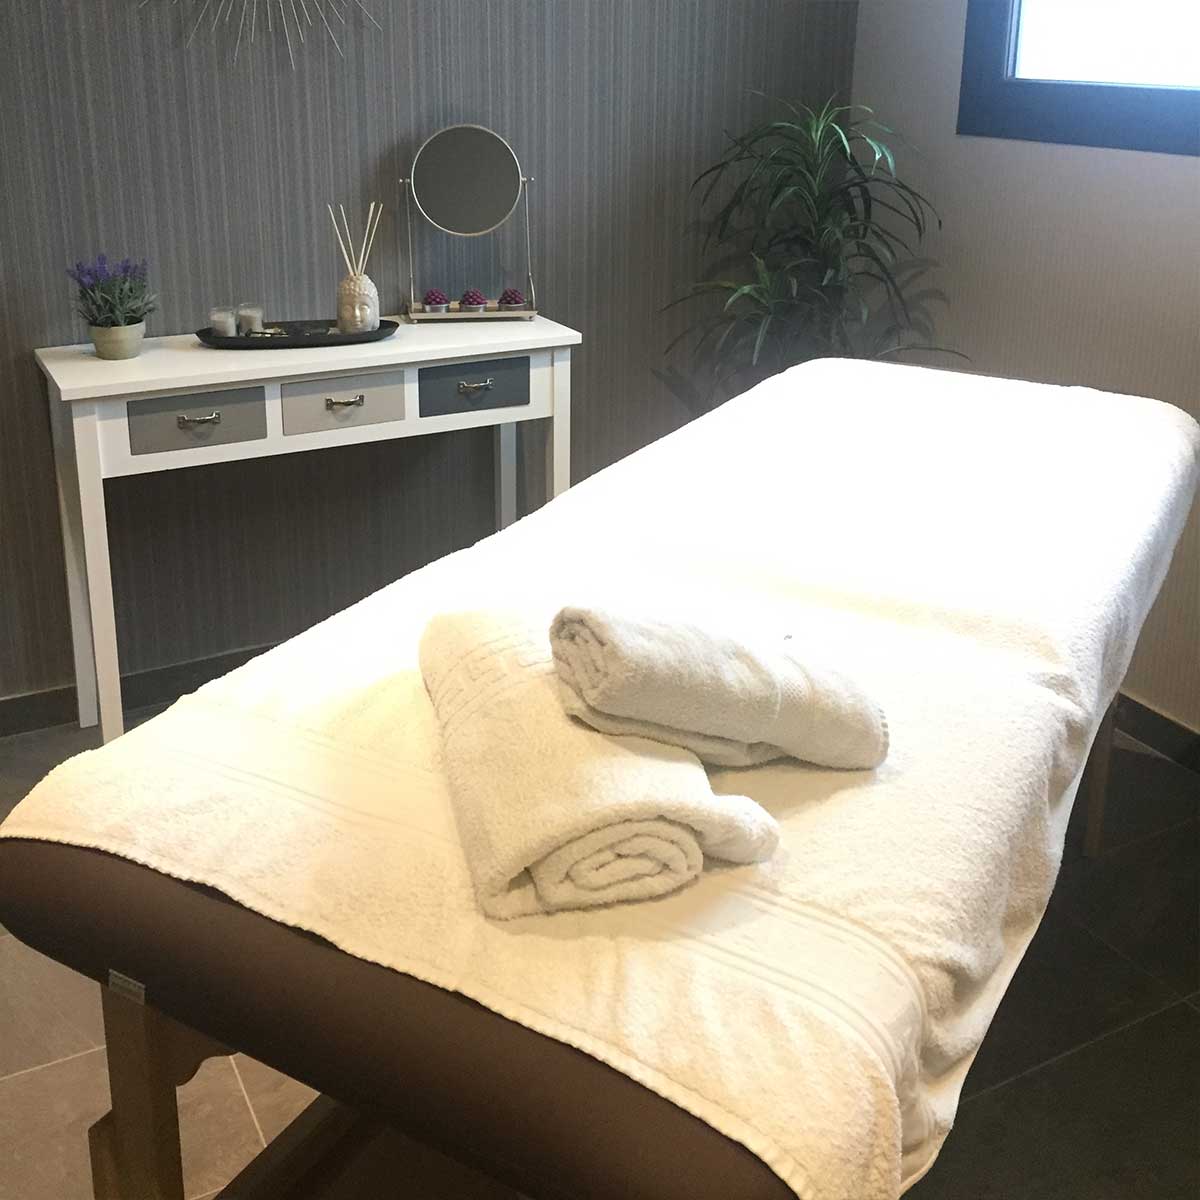 Servicios: En el Hotel Petit Palau disponemos de servicio de masajes